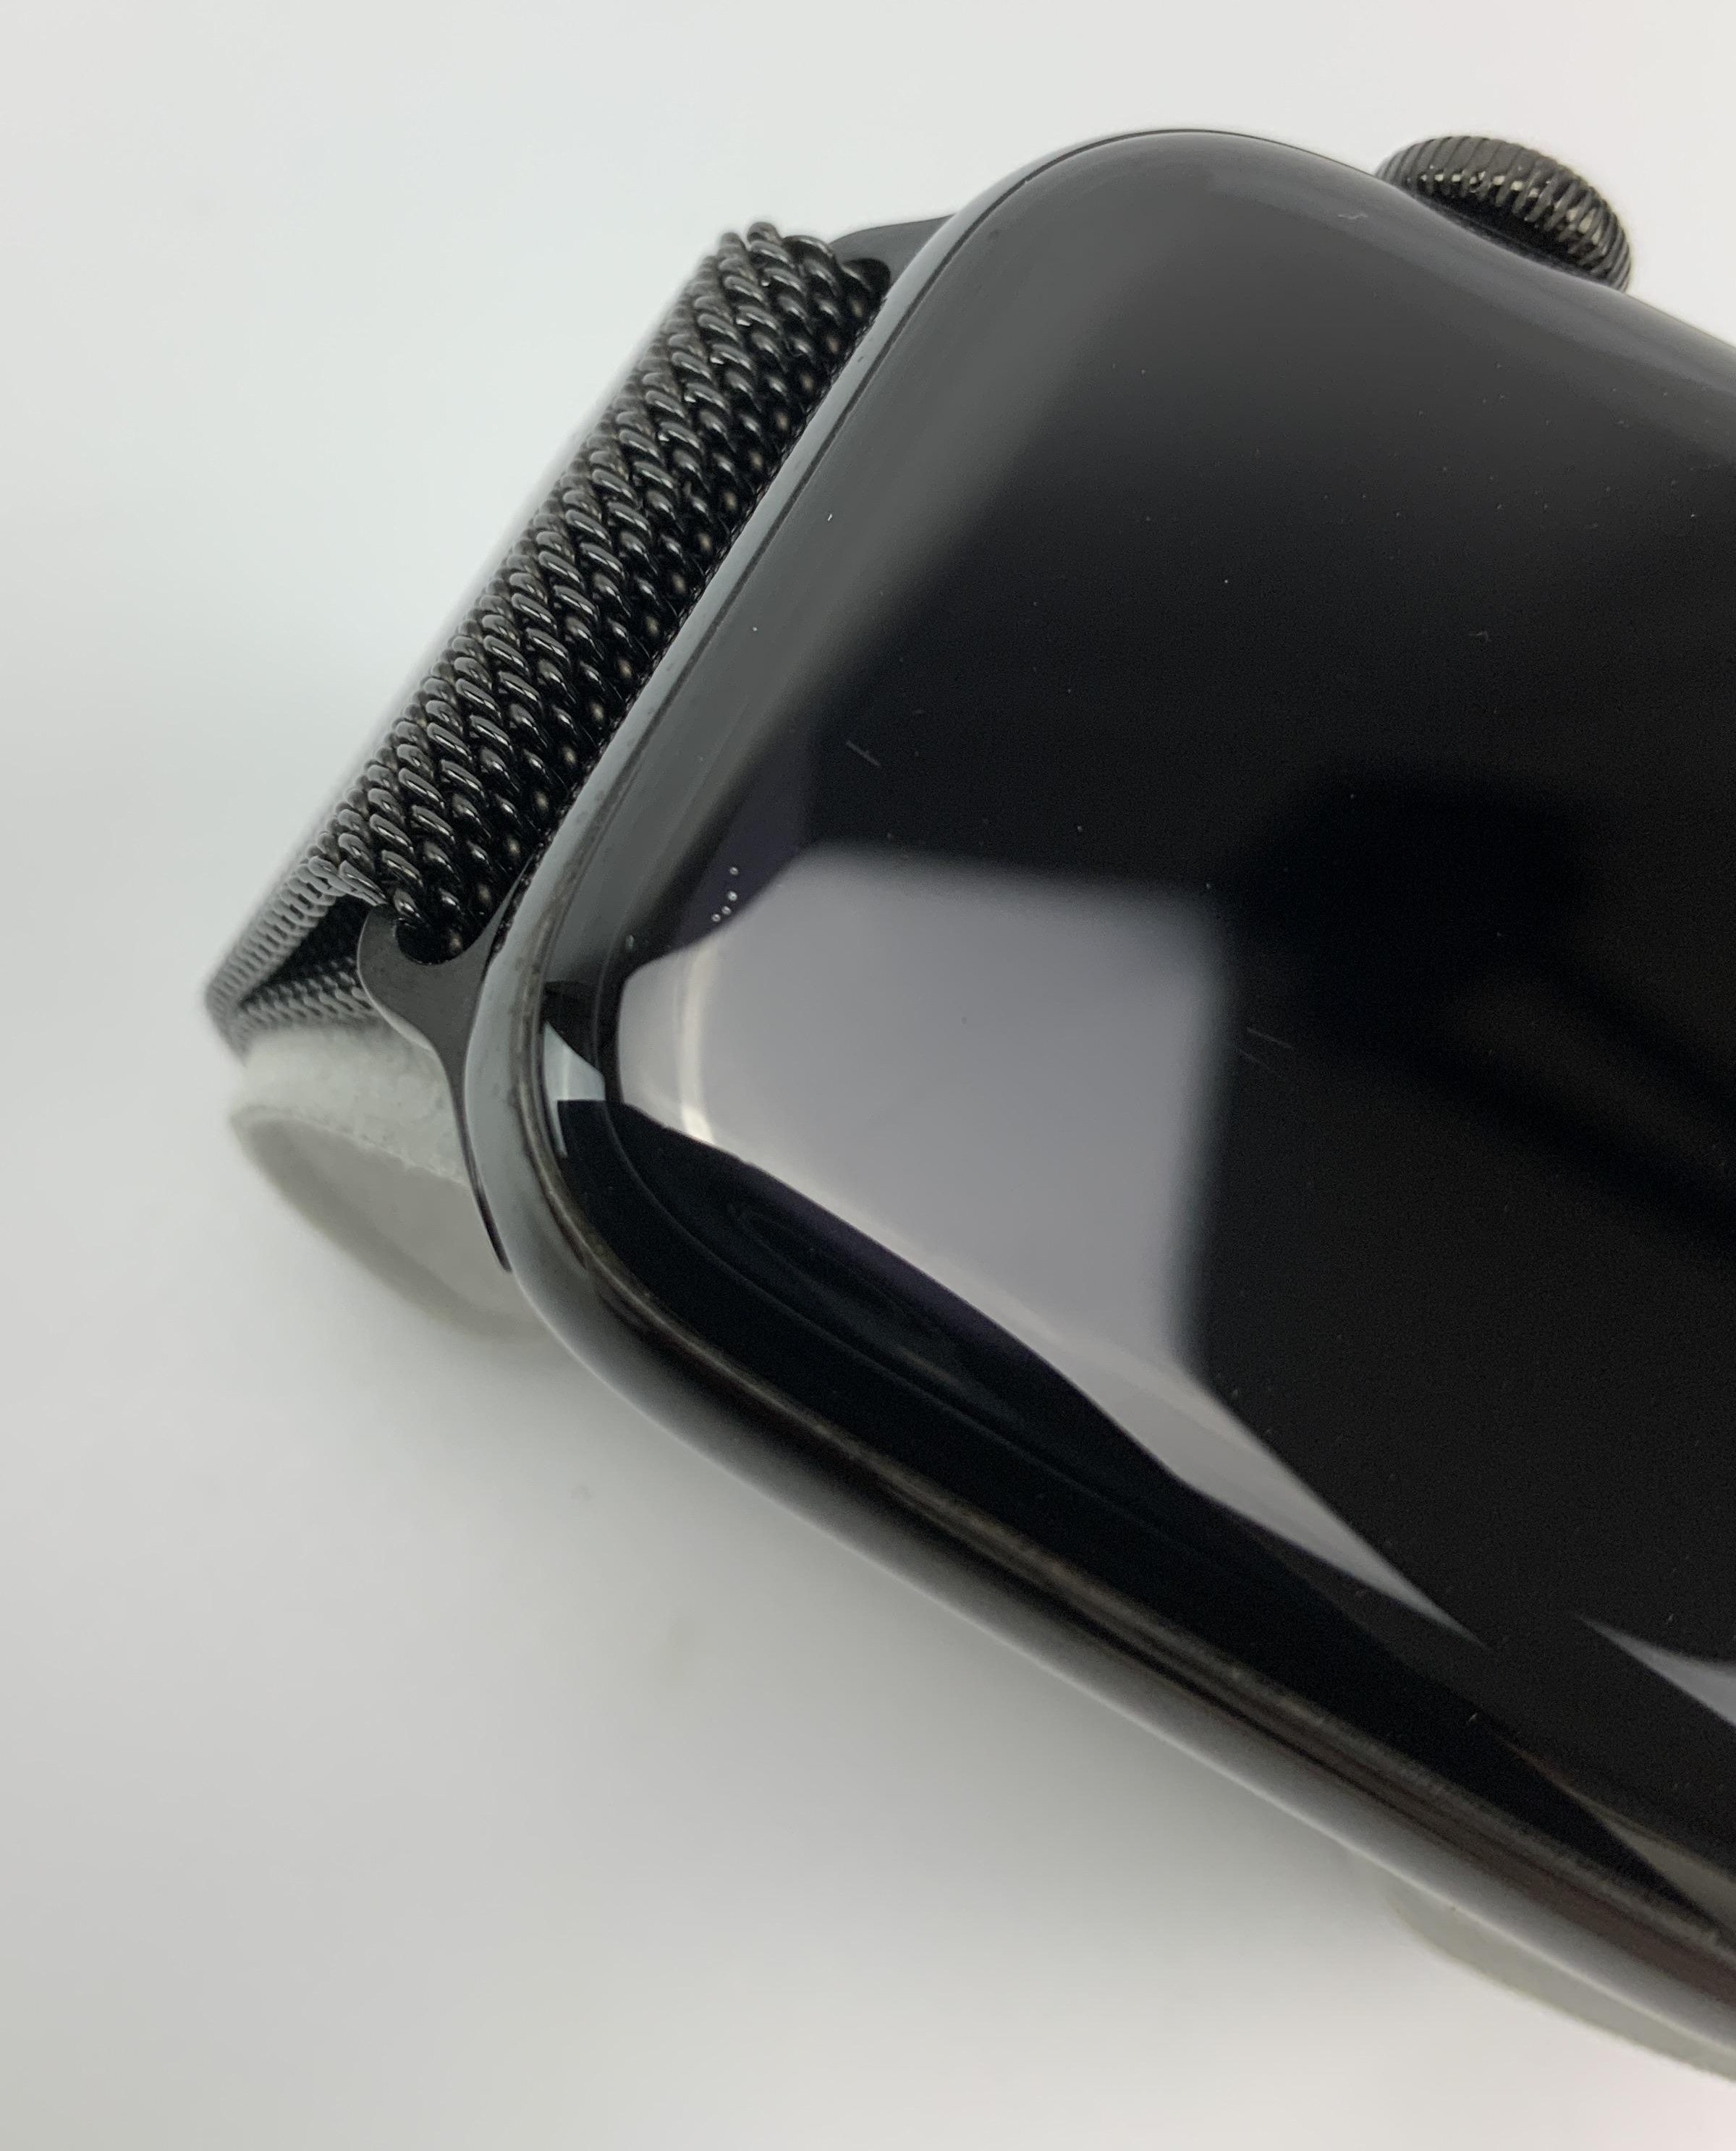 Watch Series 4 Steel Cellular (44mm), Space Black, Space Black Milanese Loop, bild 4